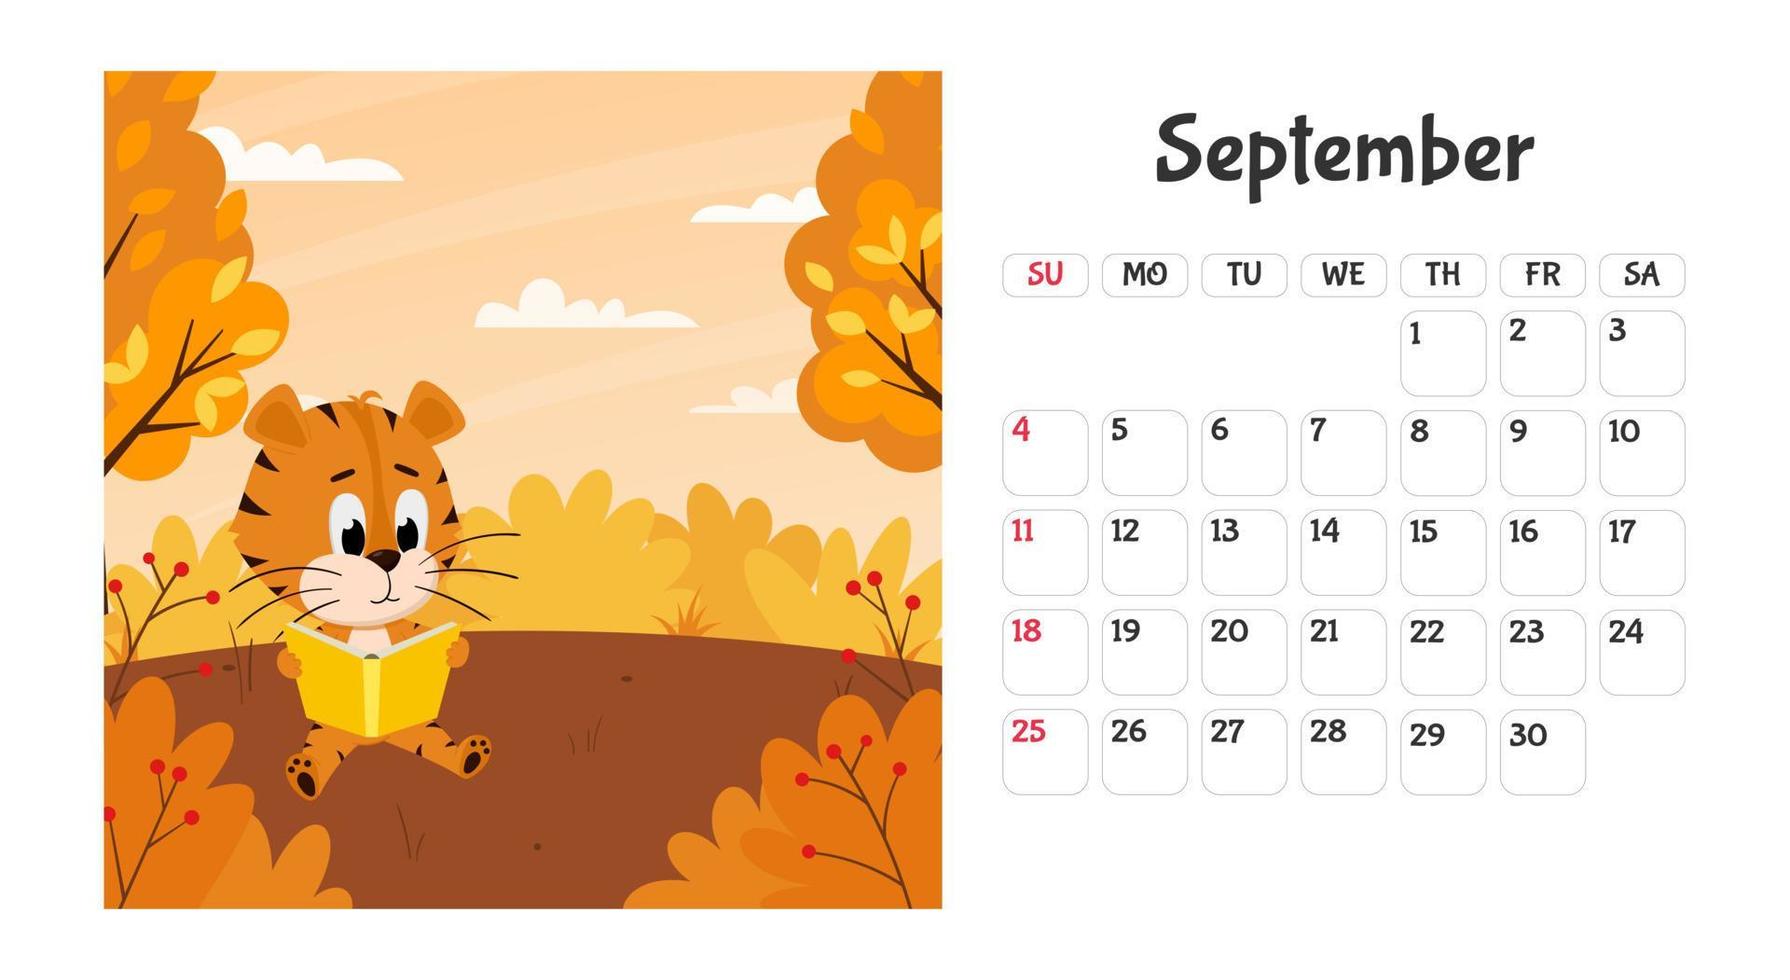 horizontale desktop-kalenderseitenvorlage für september 2022 mit einem cartoon-symbol für das chinesische jahr. die Woche beginnt am Sonntag. Tiger liest ein Buch unter einem Baum. vektor